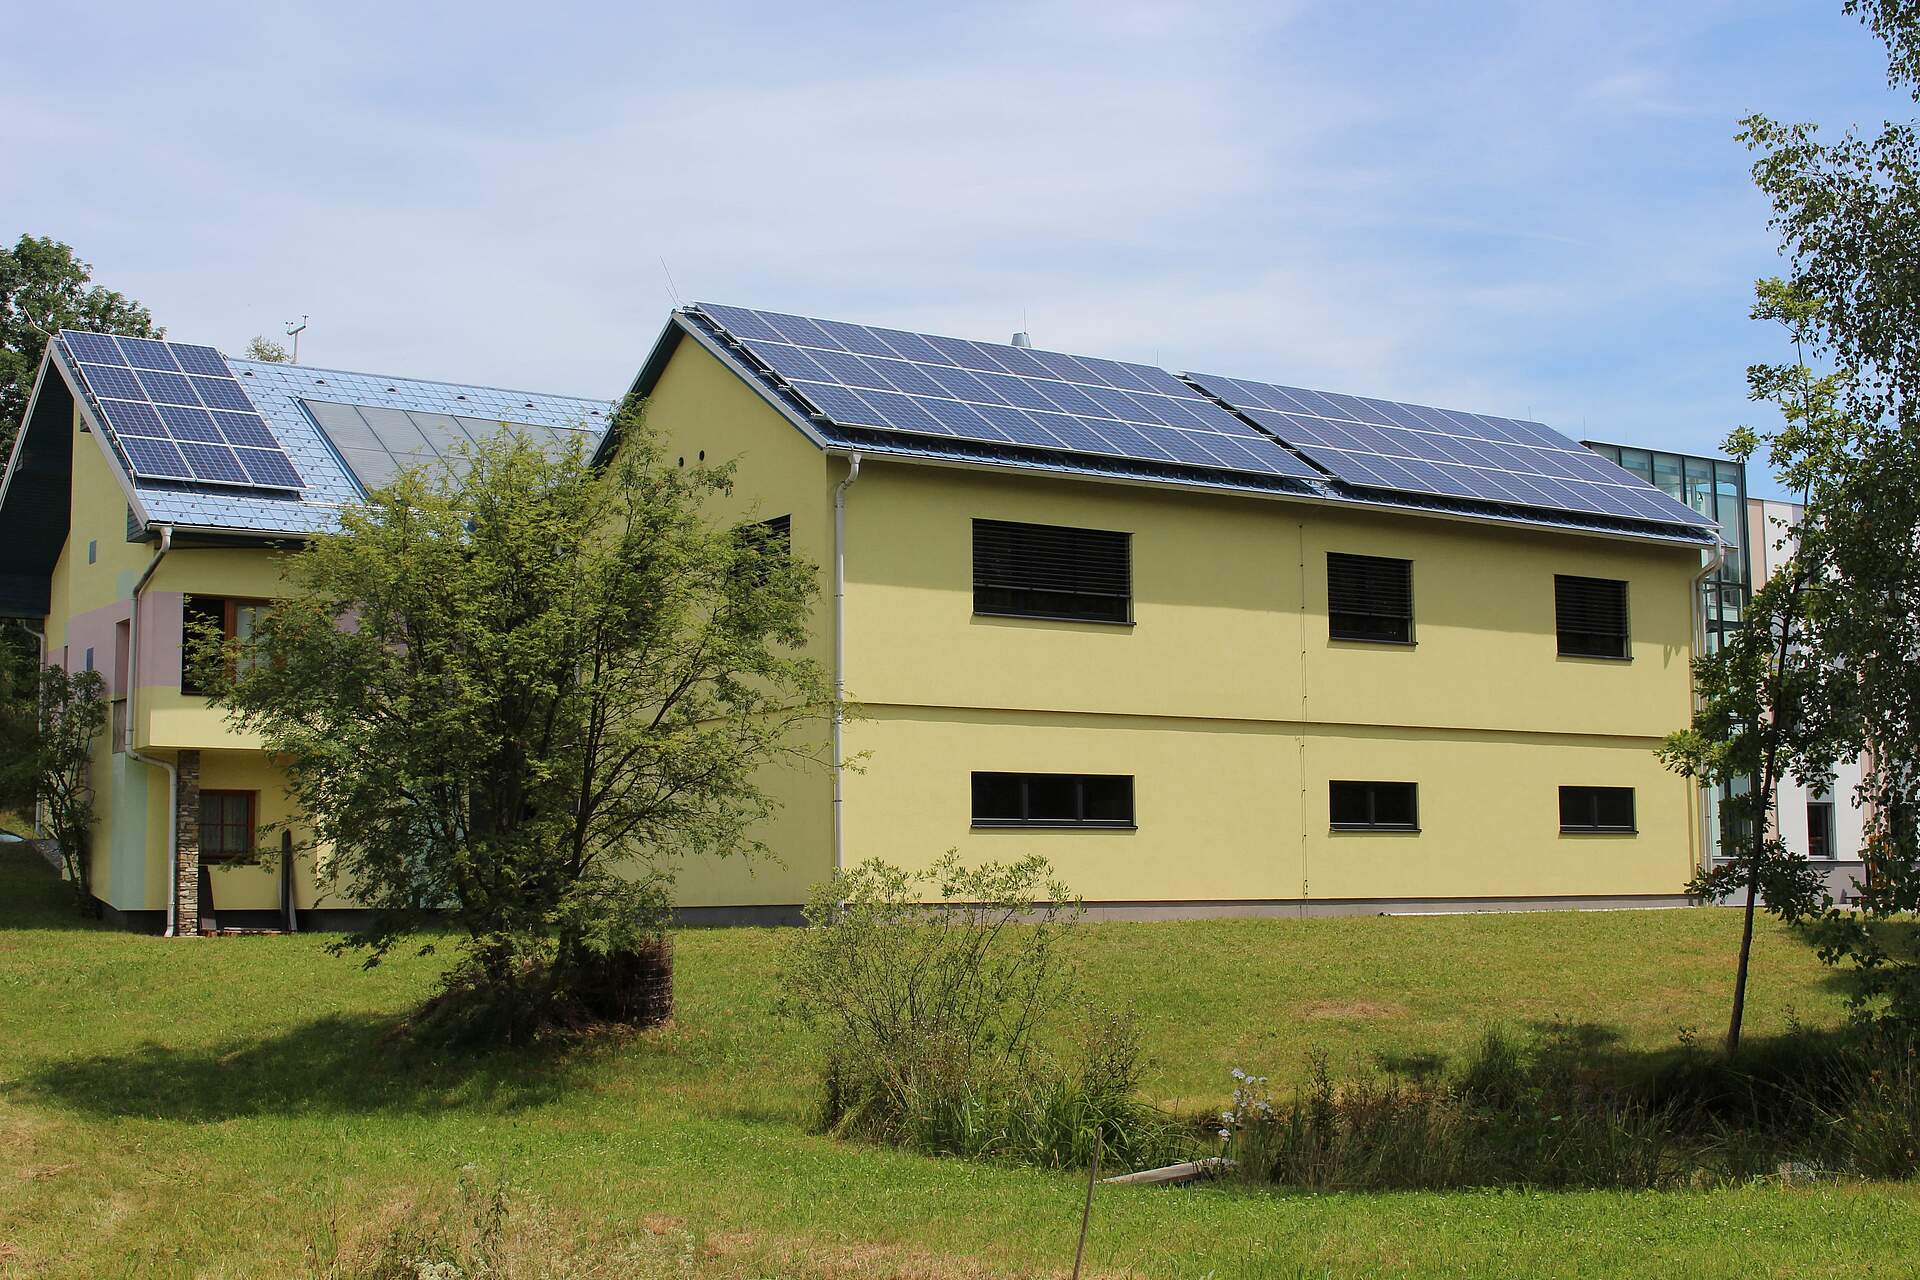 Photovoltaik Anlage am Dach unseres Firmengebäudes